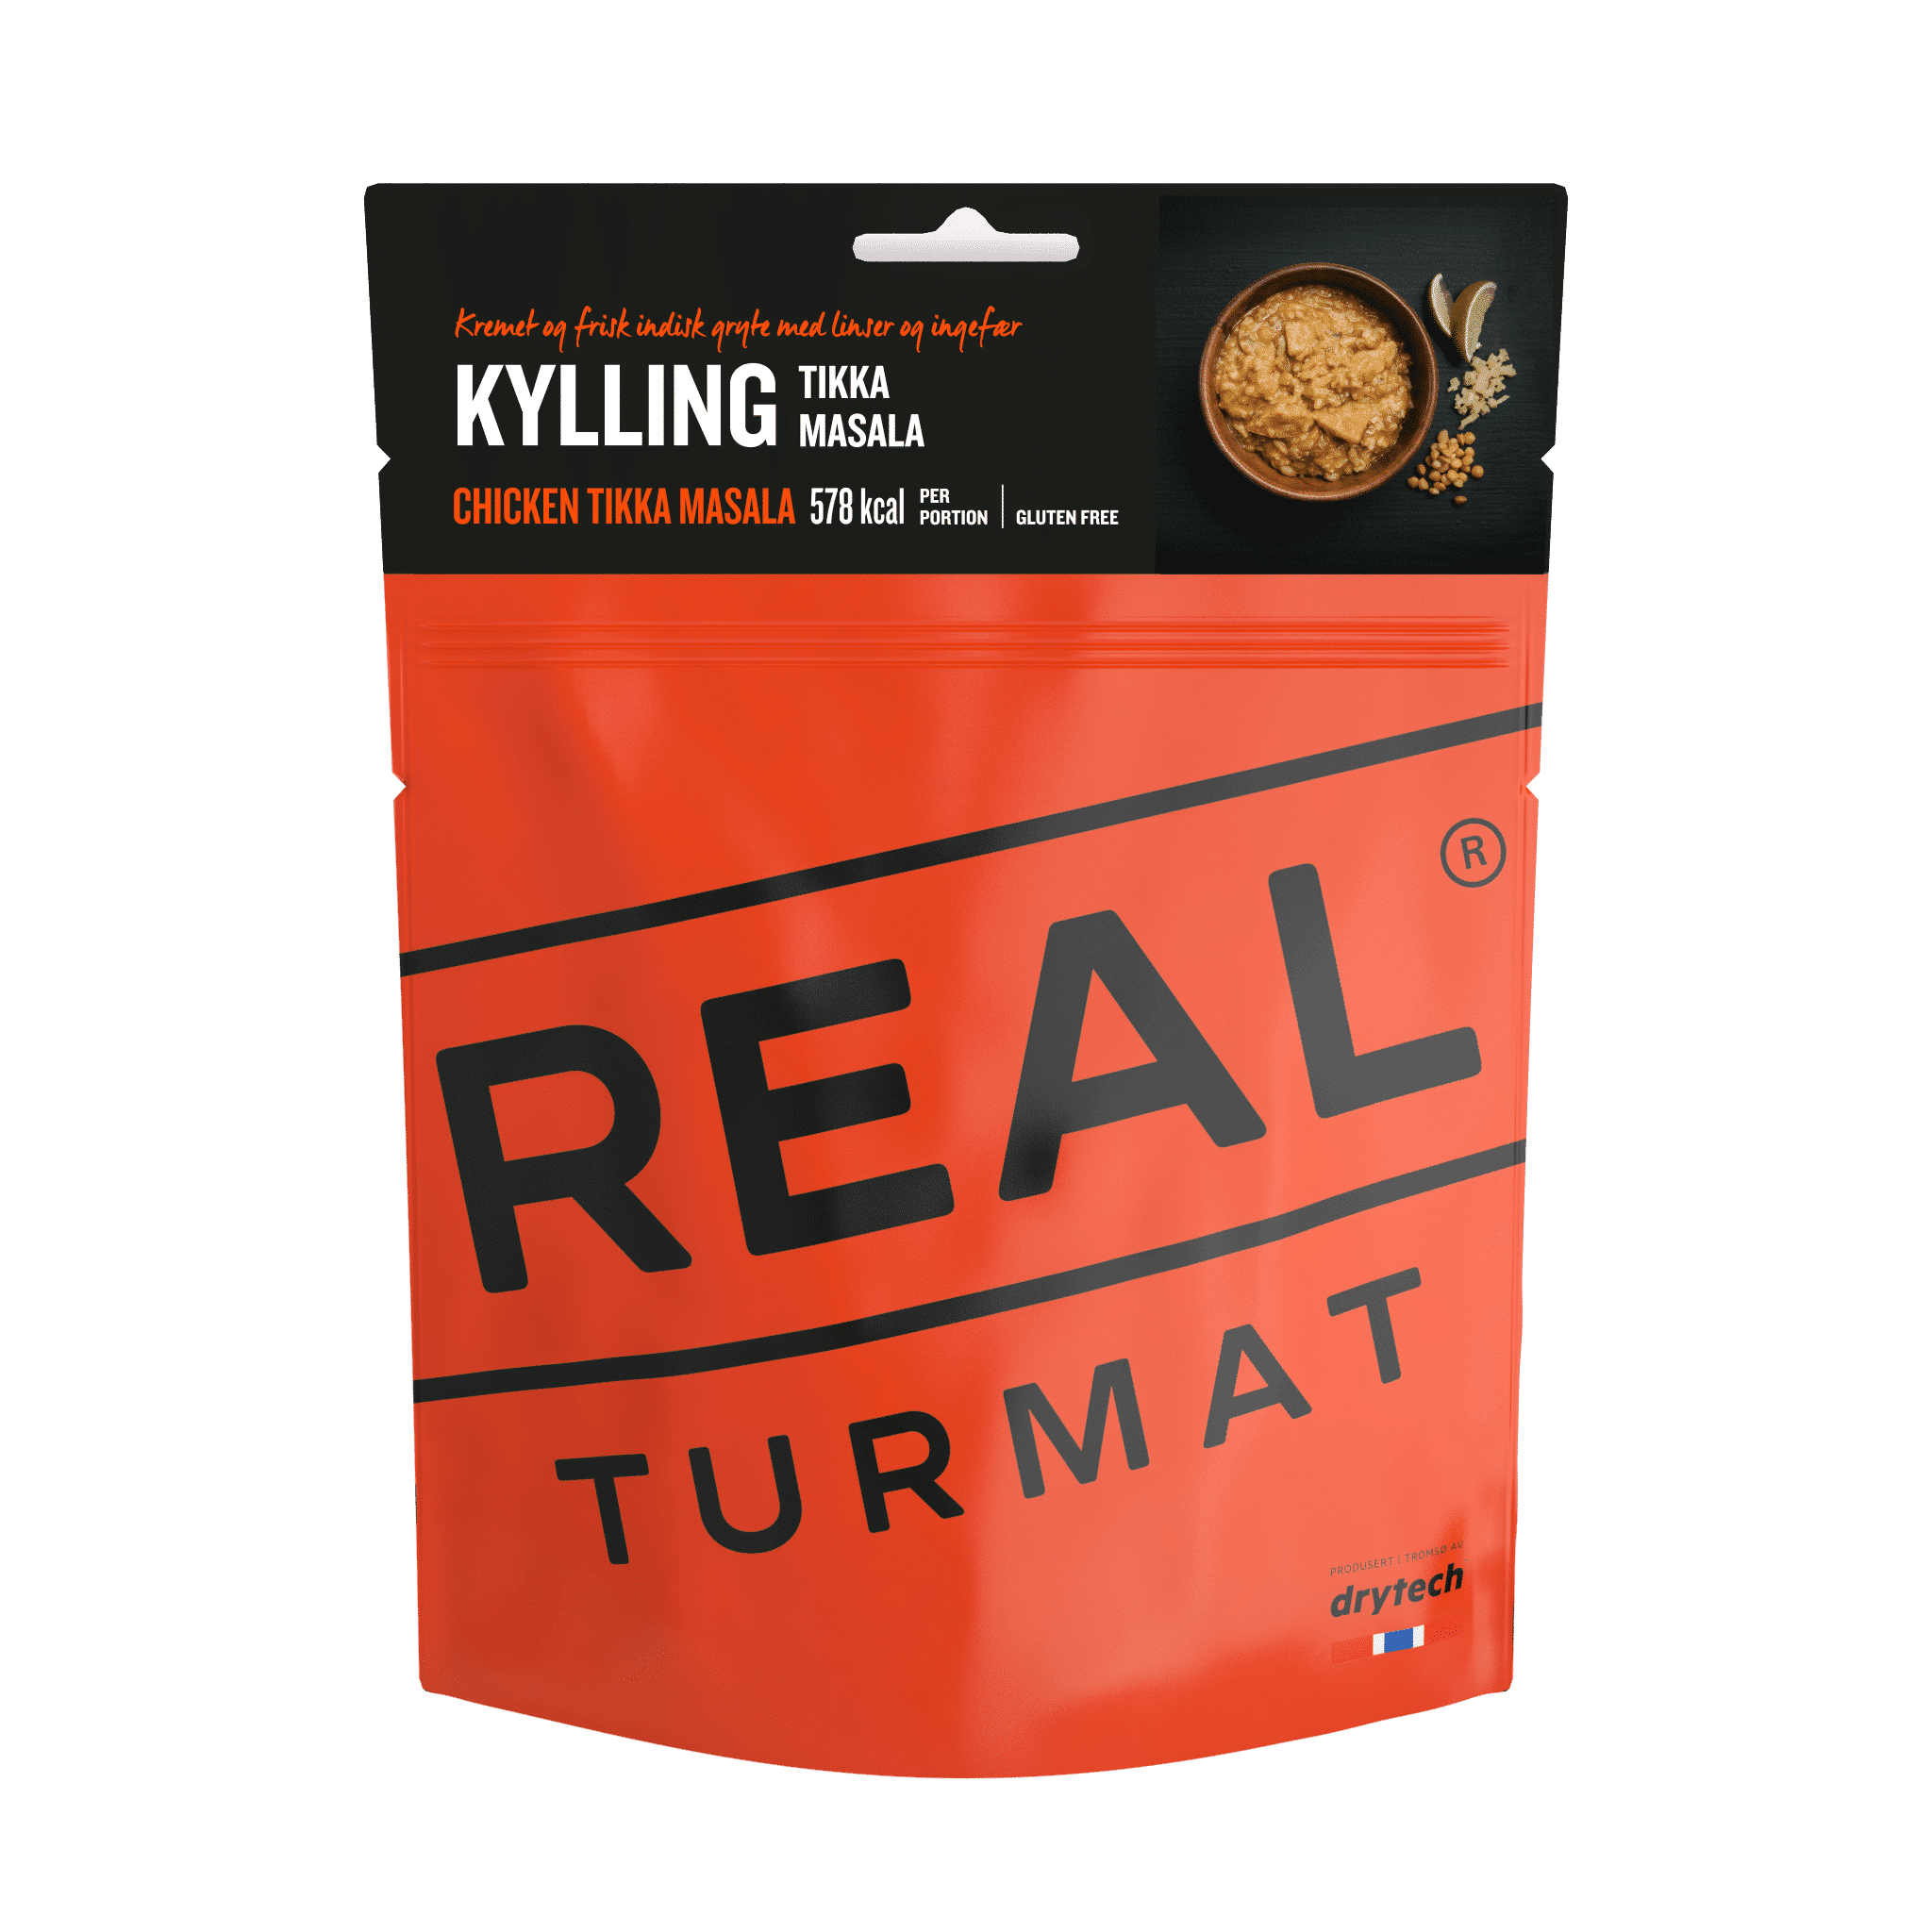 REAL TURMAT - Chicken Tikka Masala